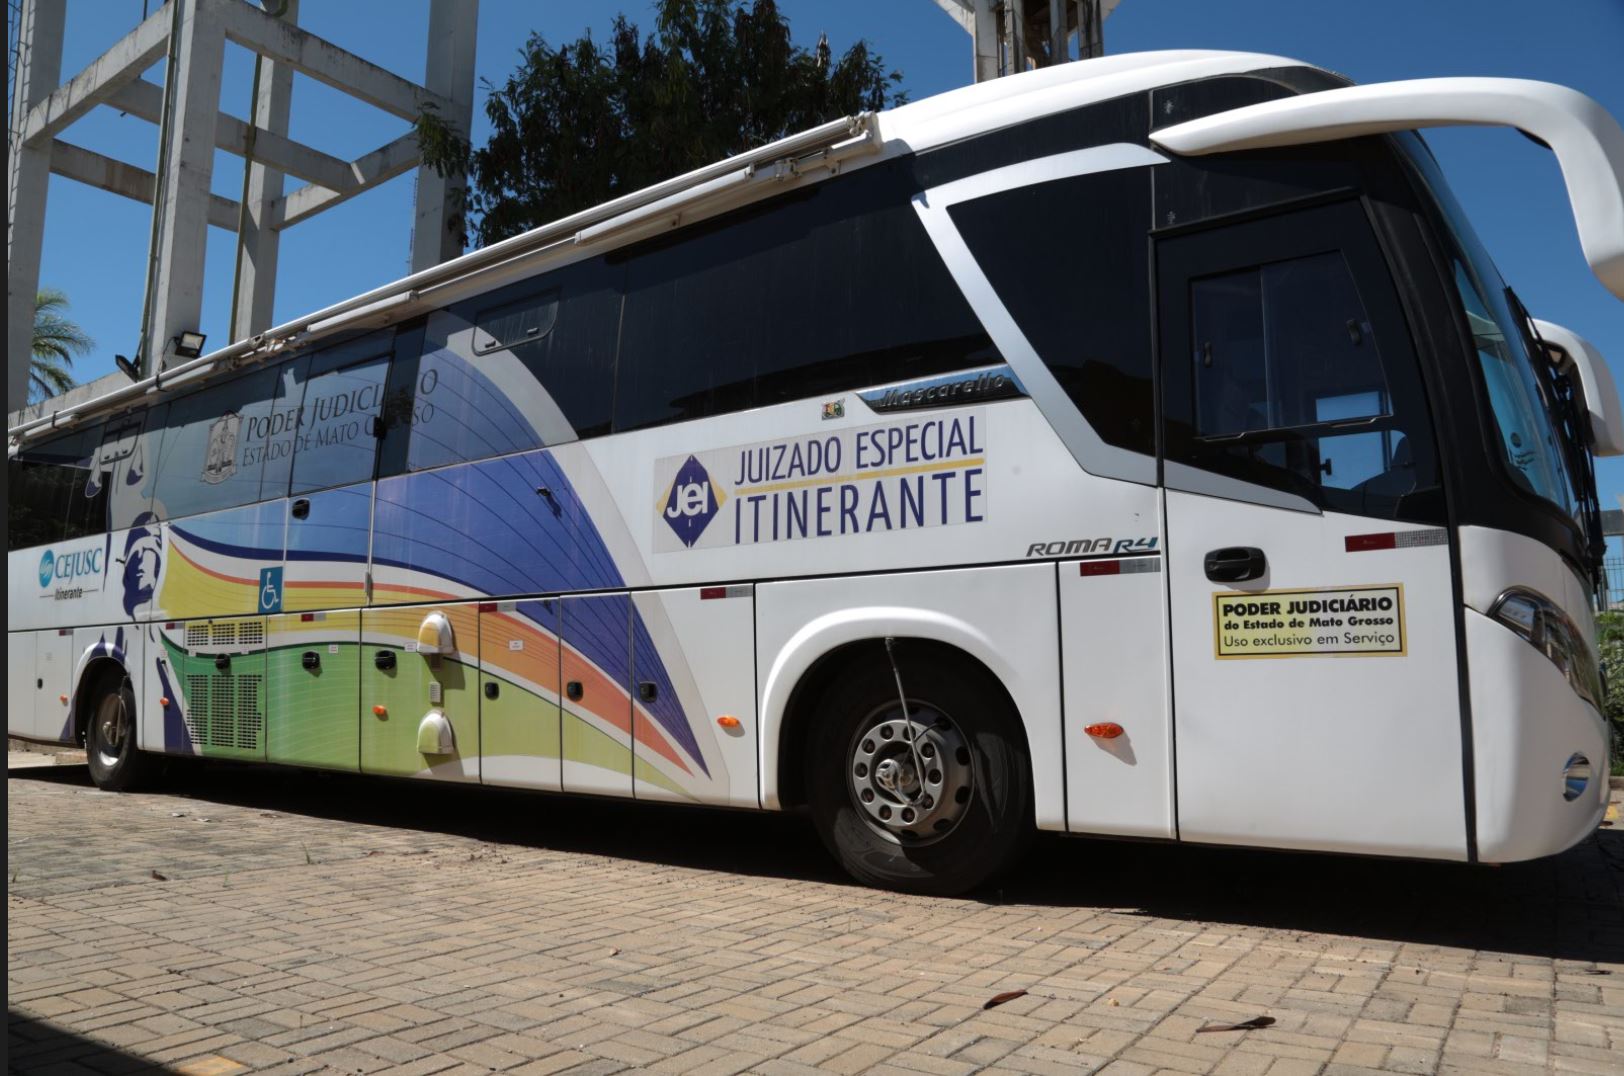 Juizado Especial Itinerante far atendimento em Figueirpolis DOeste, Indiava e Cceres